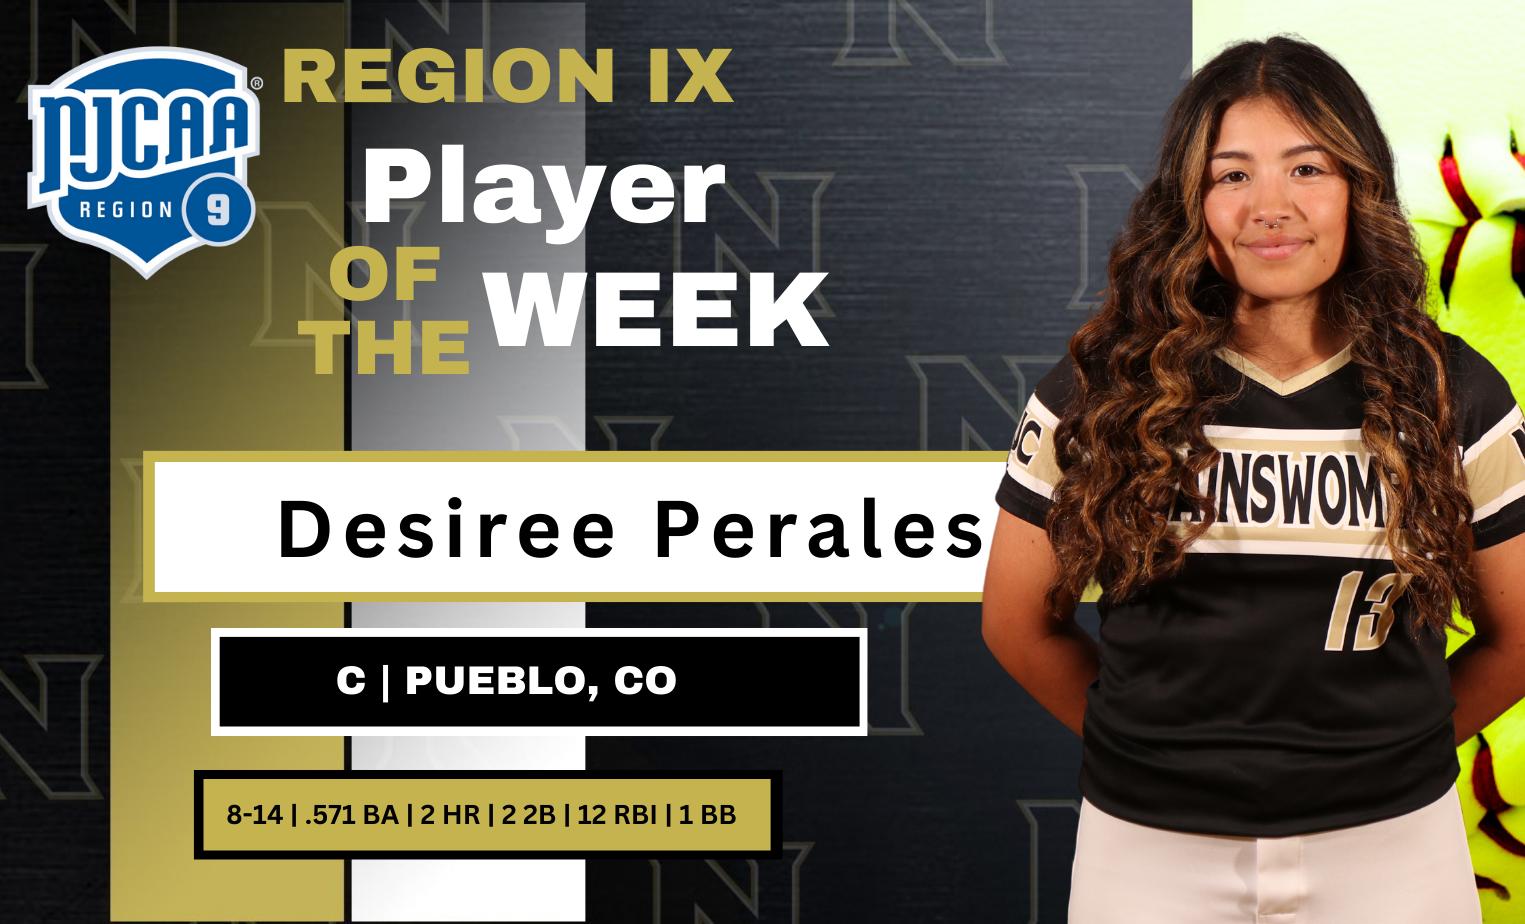 Desiree Perales Gets Region IX Player of the Week